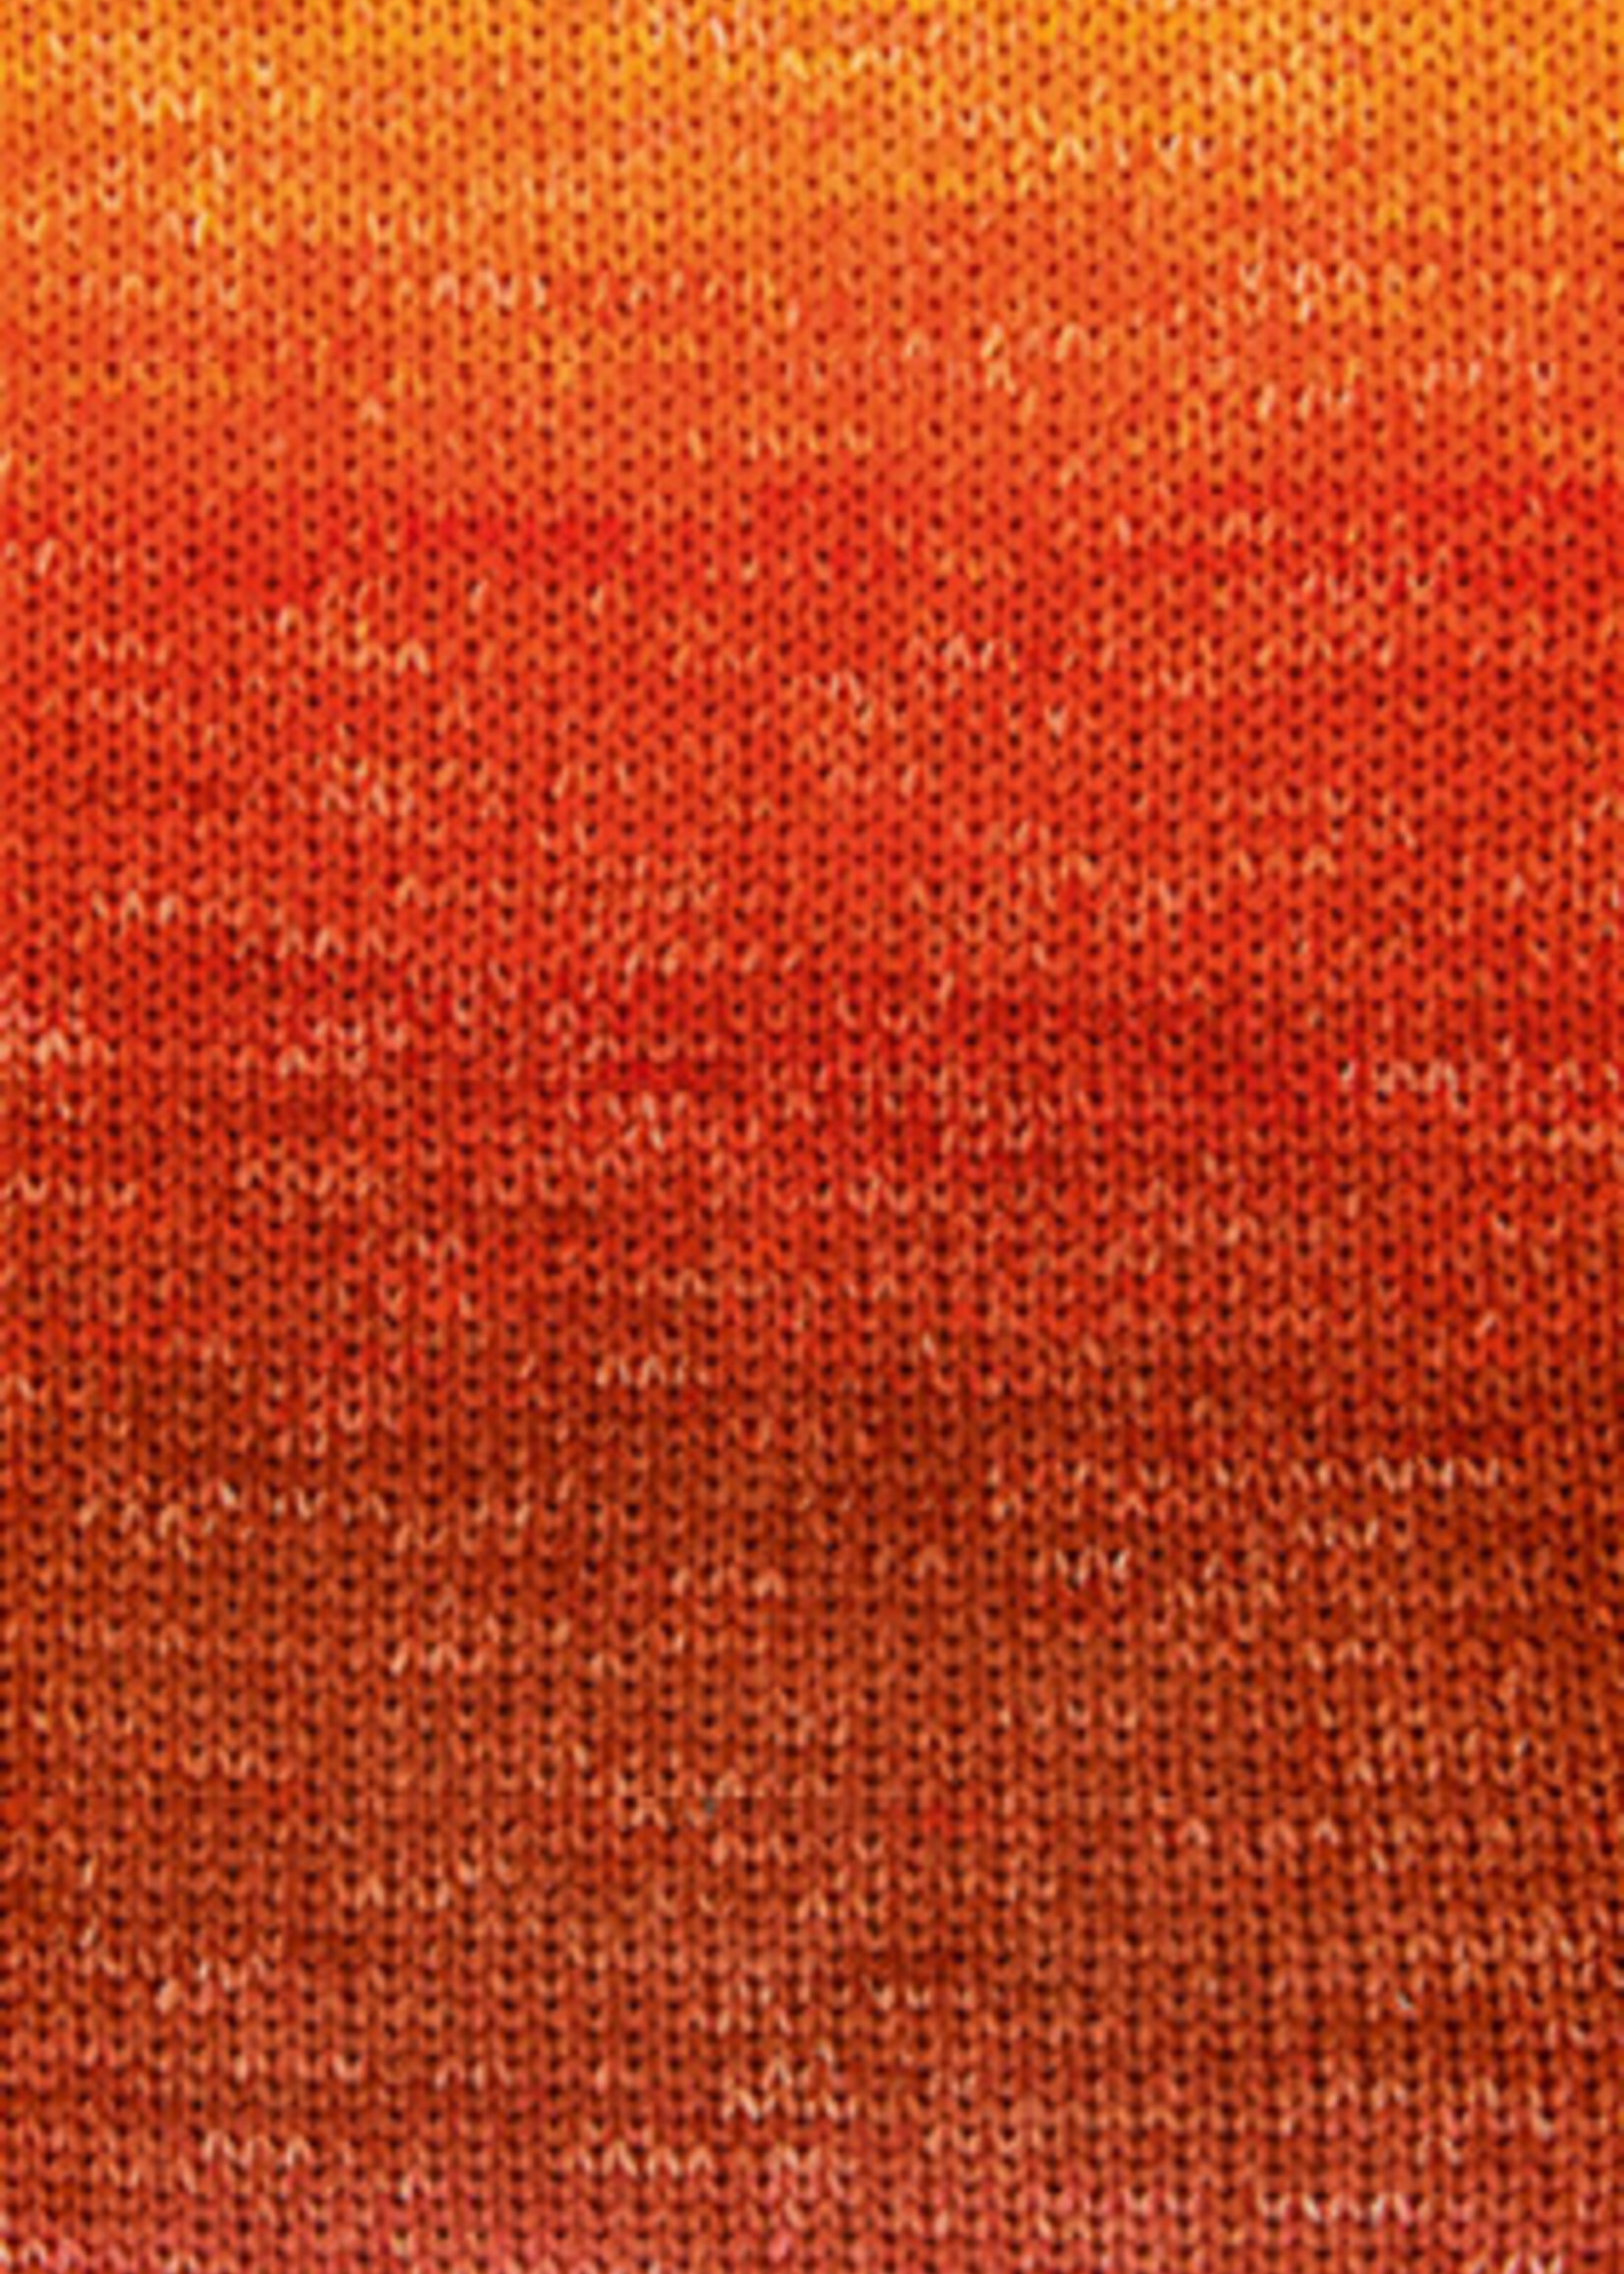 Lana Grossa Cotonella - Lana Grossa -04 Wijnrood/oranje/rood/vuurrood